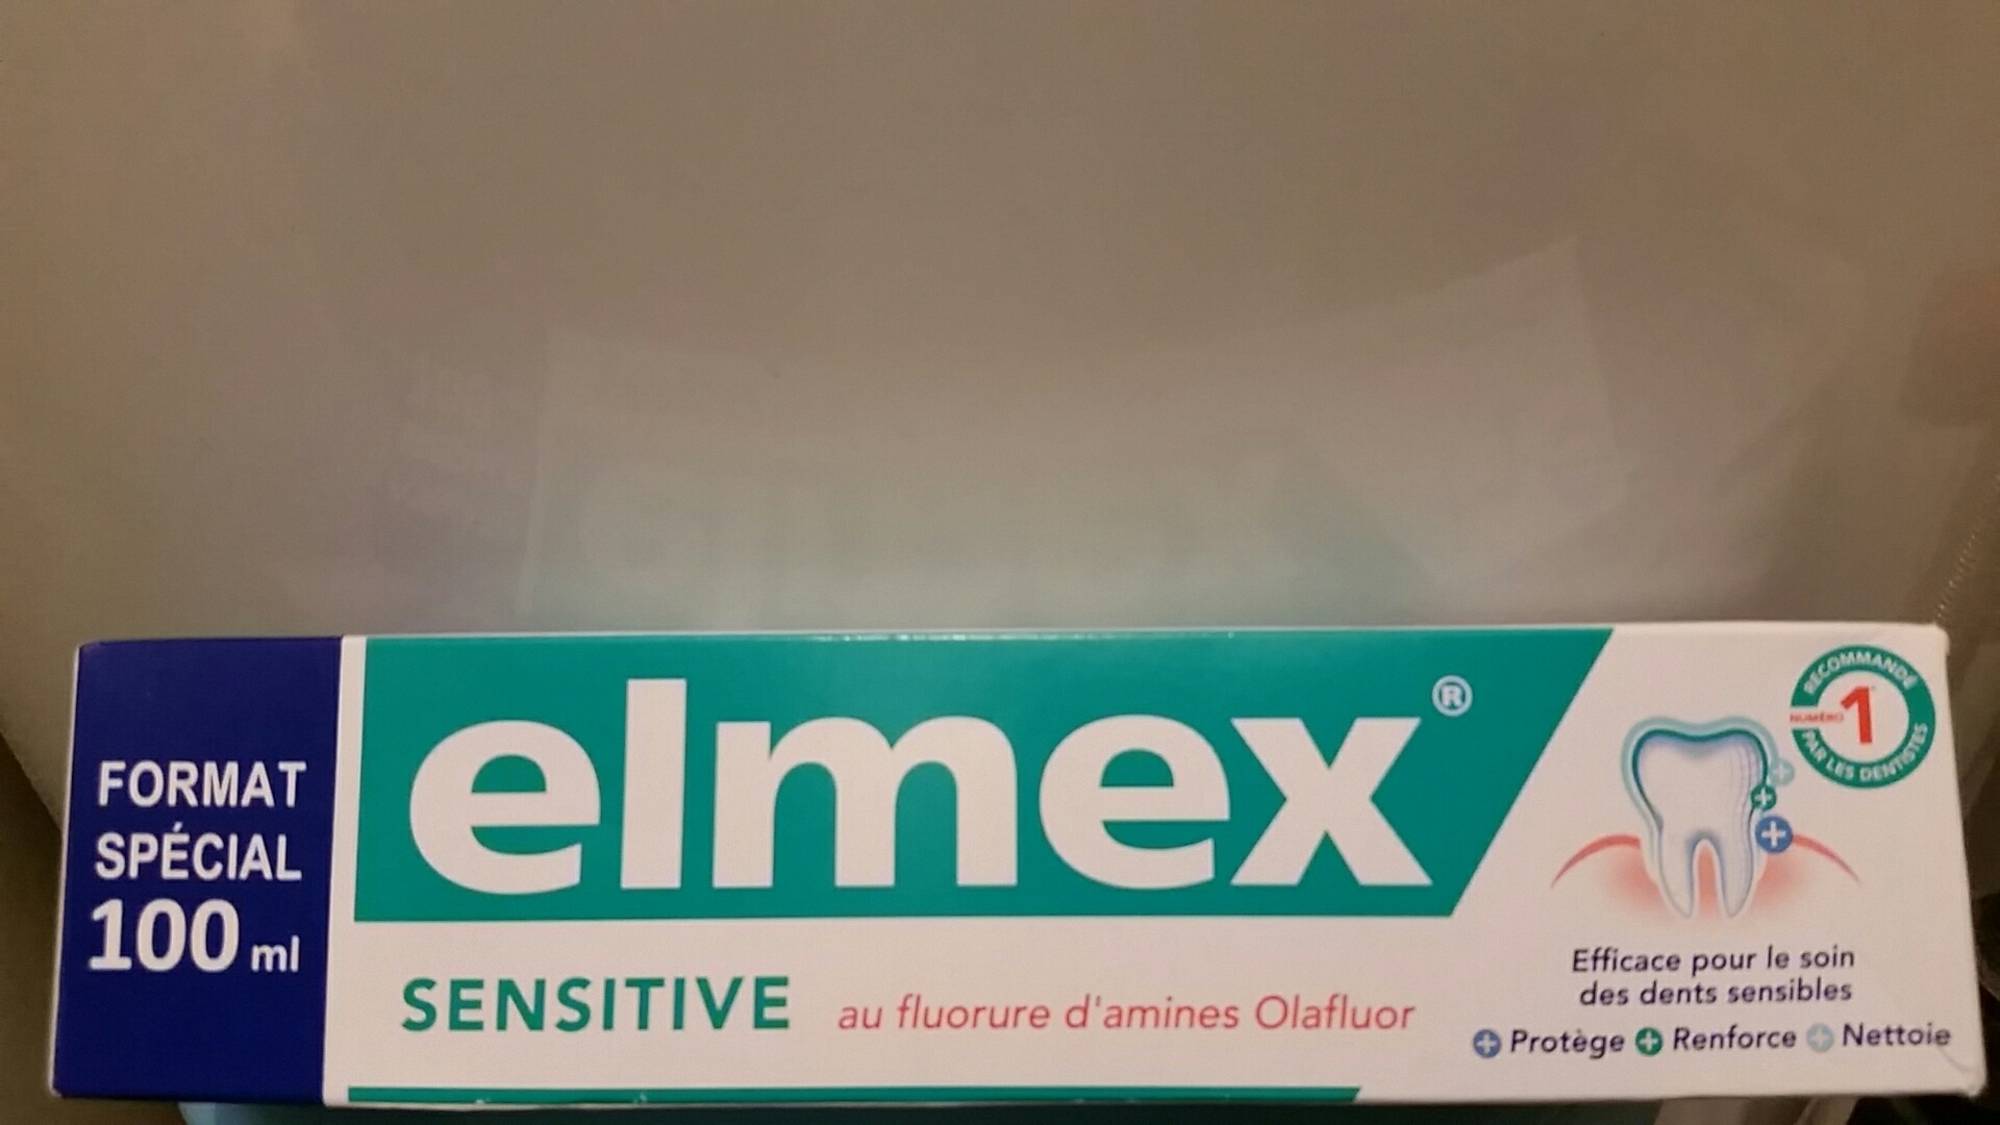 ELMEX - Sensitive au fluorure d'amines olafluor - Dentifrice